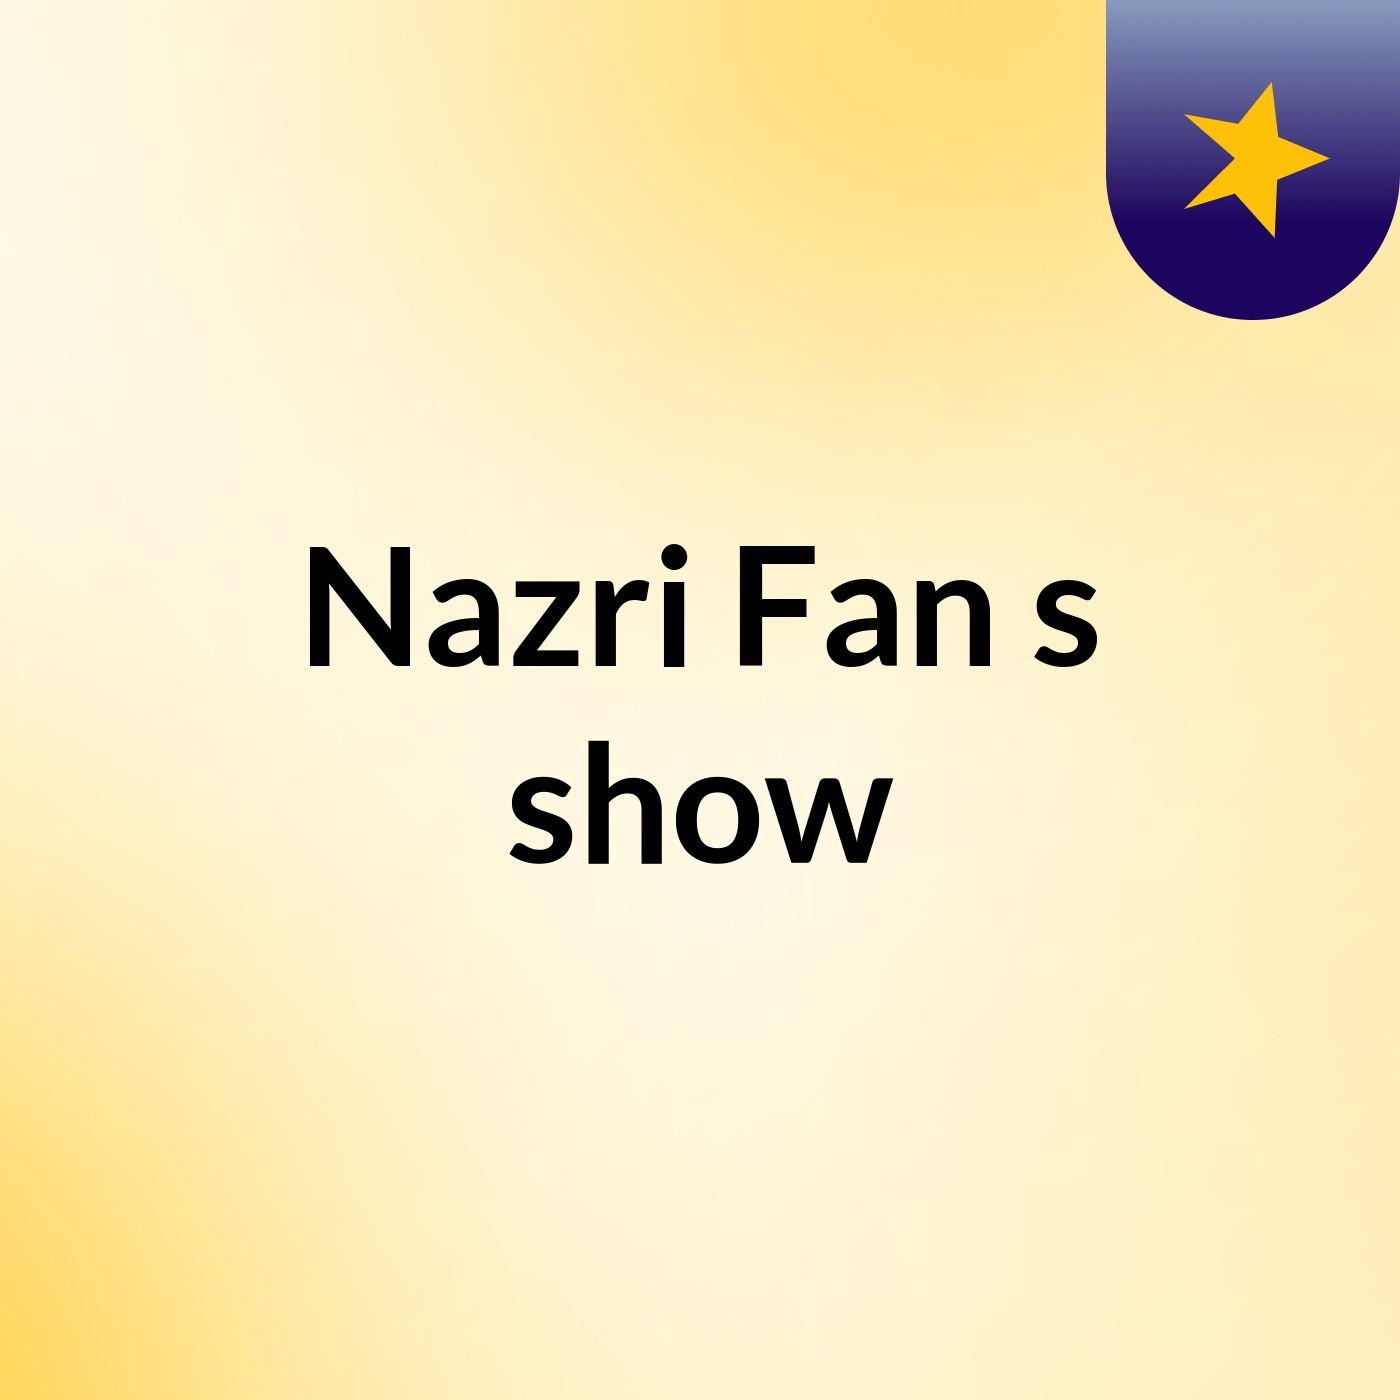 Nazri Fan's show